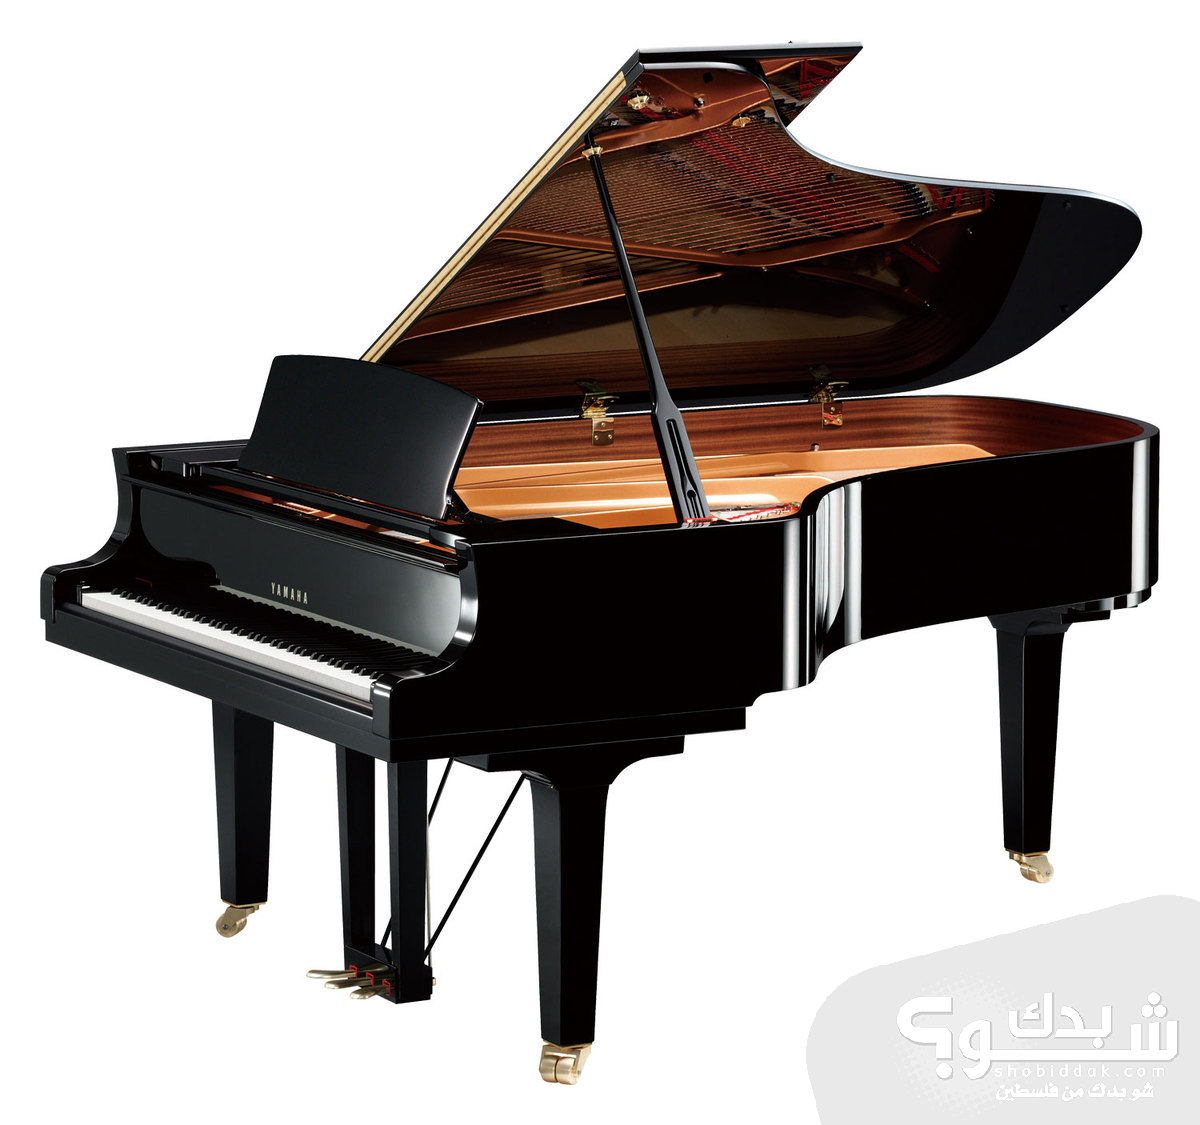 حصص خاصة على الة الكمان و البيانو | شو بدك من فلسطين؟